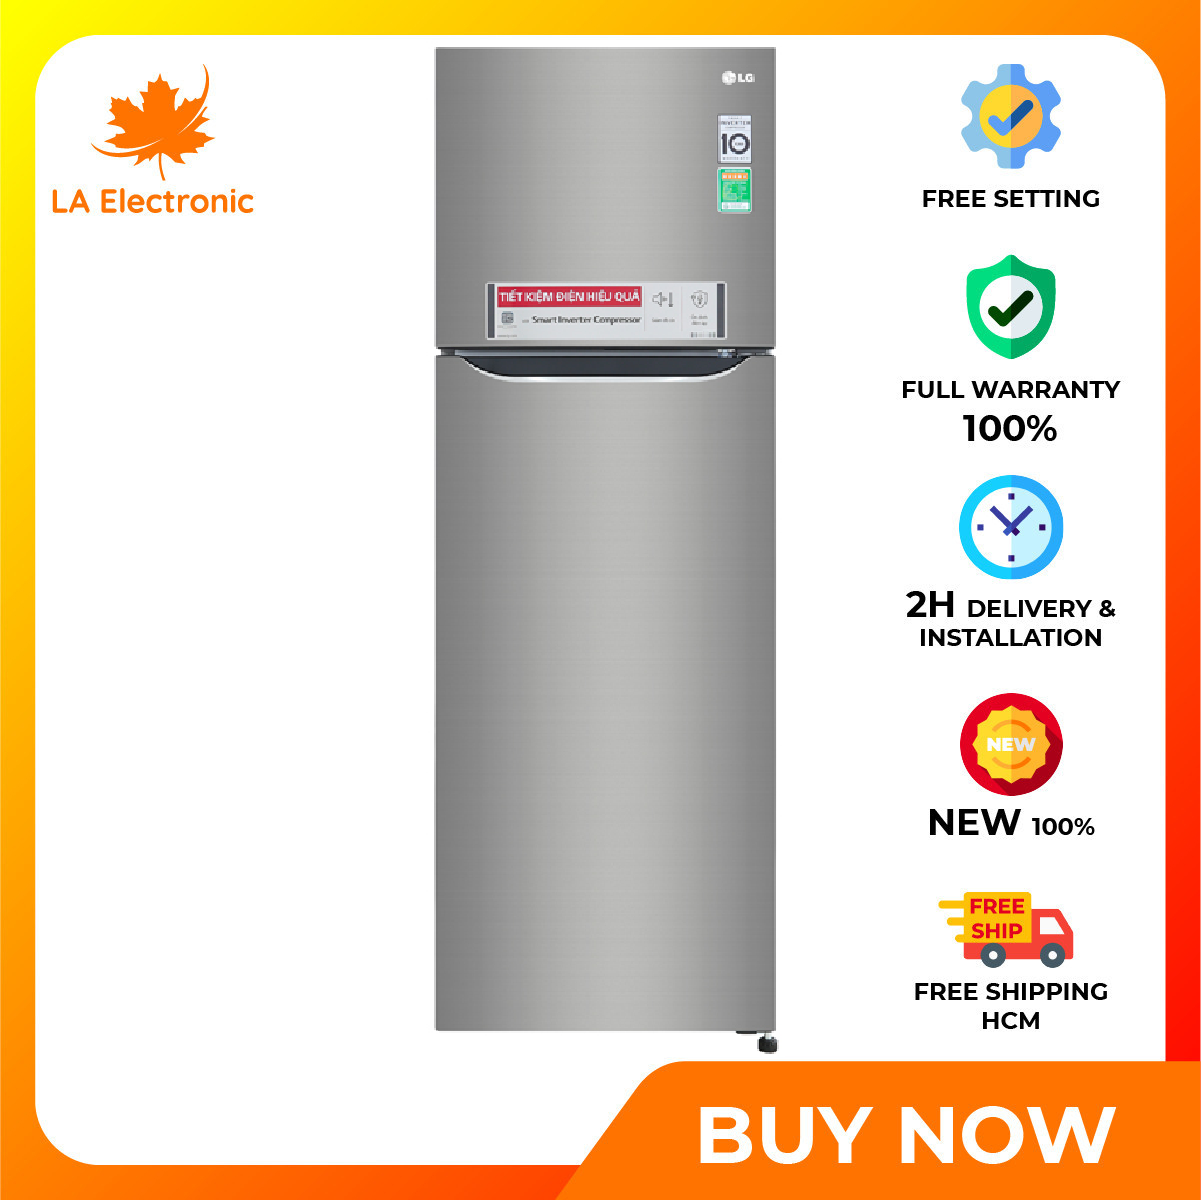 [Trả góp 0%]Installment 0% – LG Inverter 255 liter refrigerator GN-M255PS – Free shipping HCM